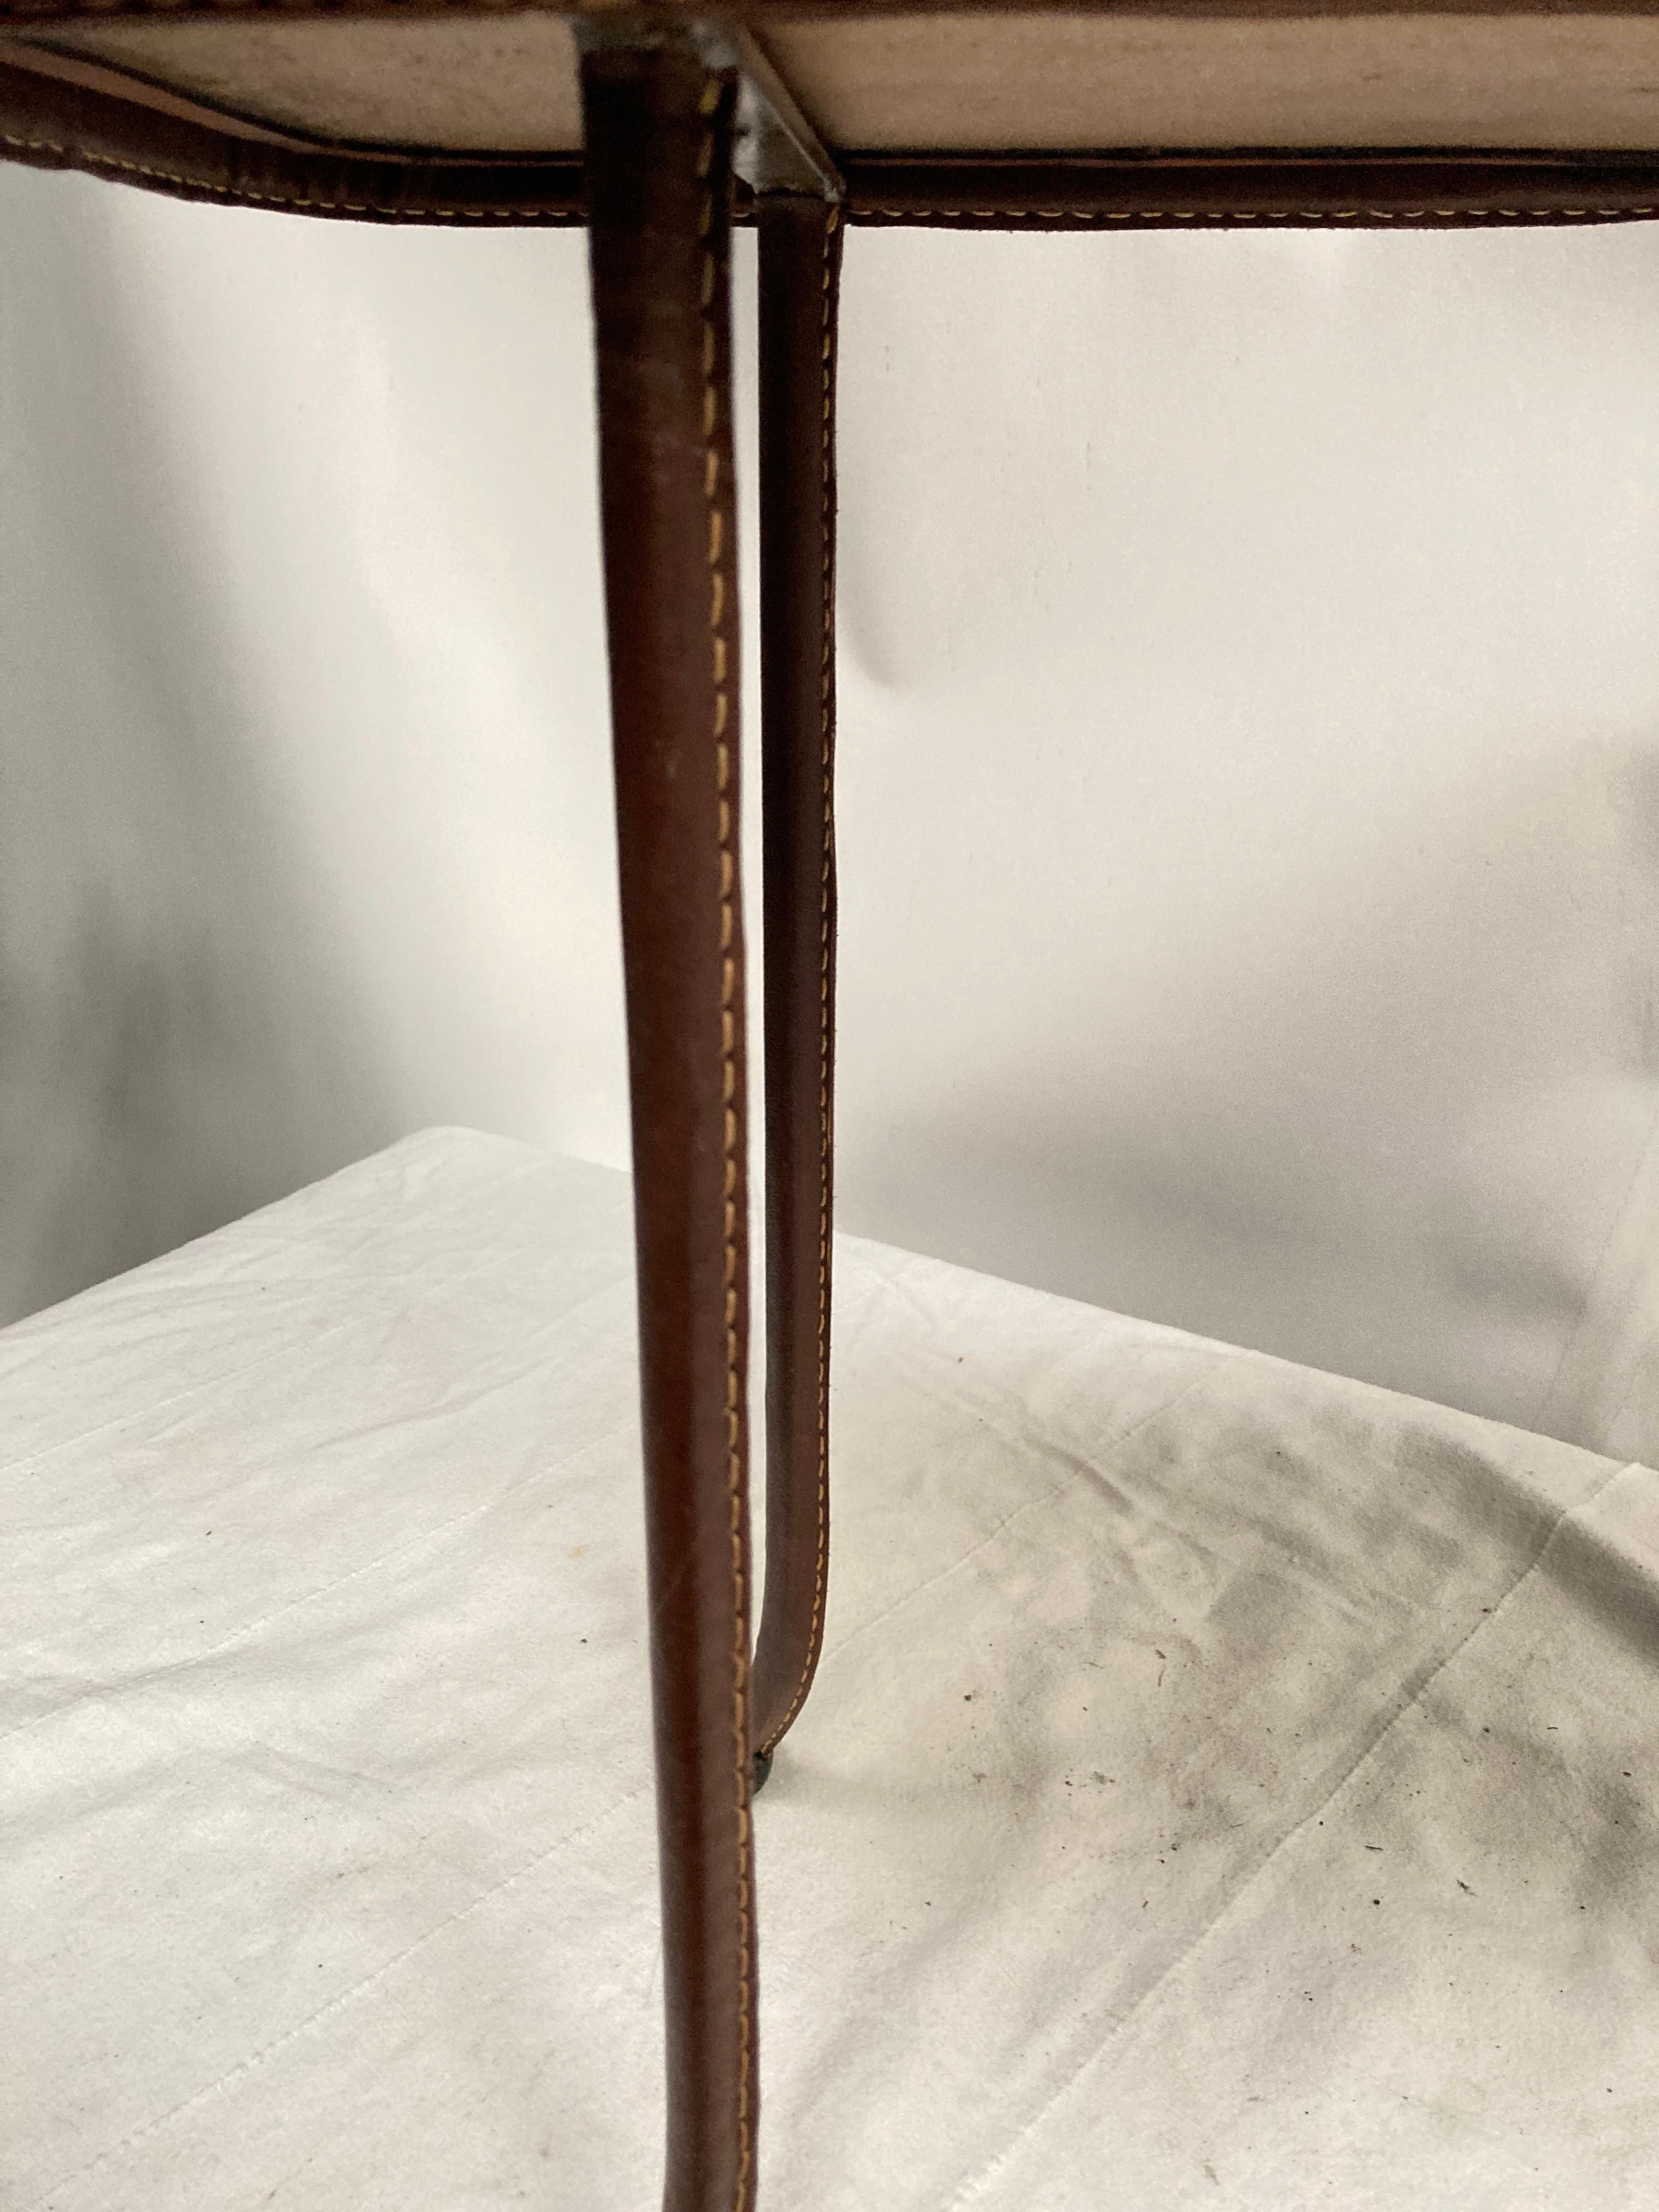 Belle table d'appoint en cuir surpiqué par Jacques Adnet 
Cuir marron
